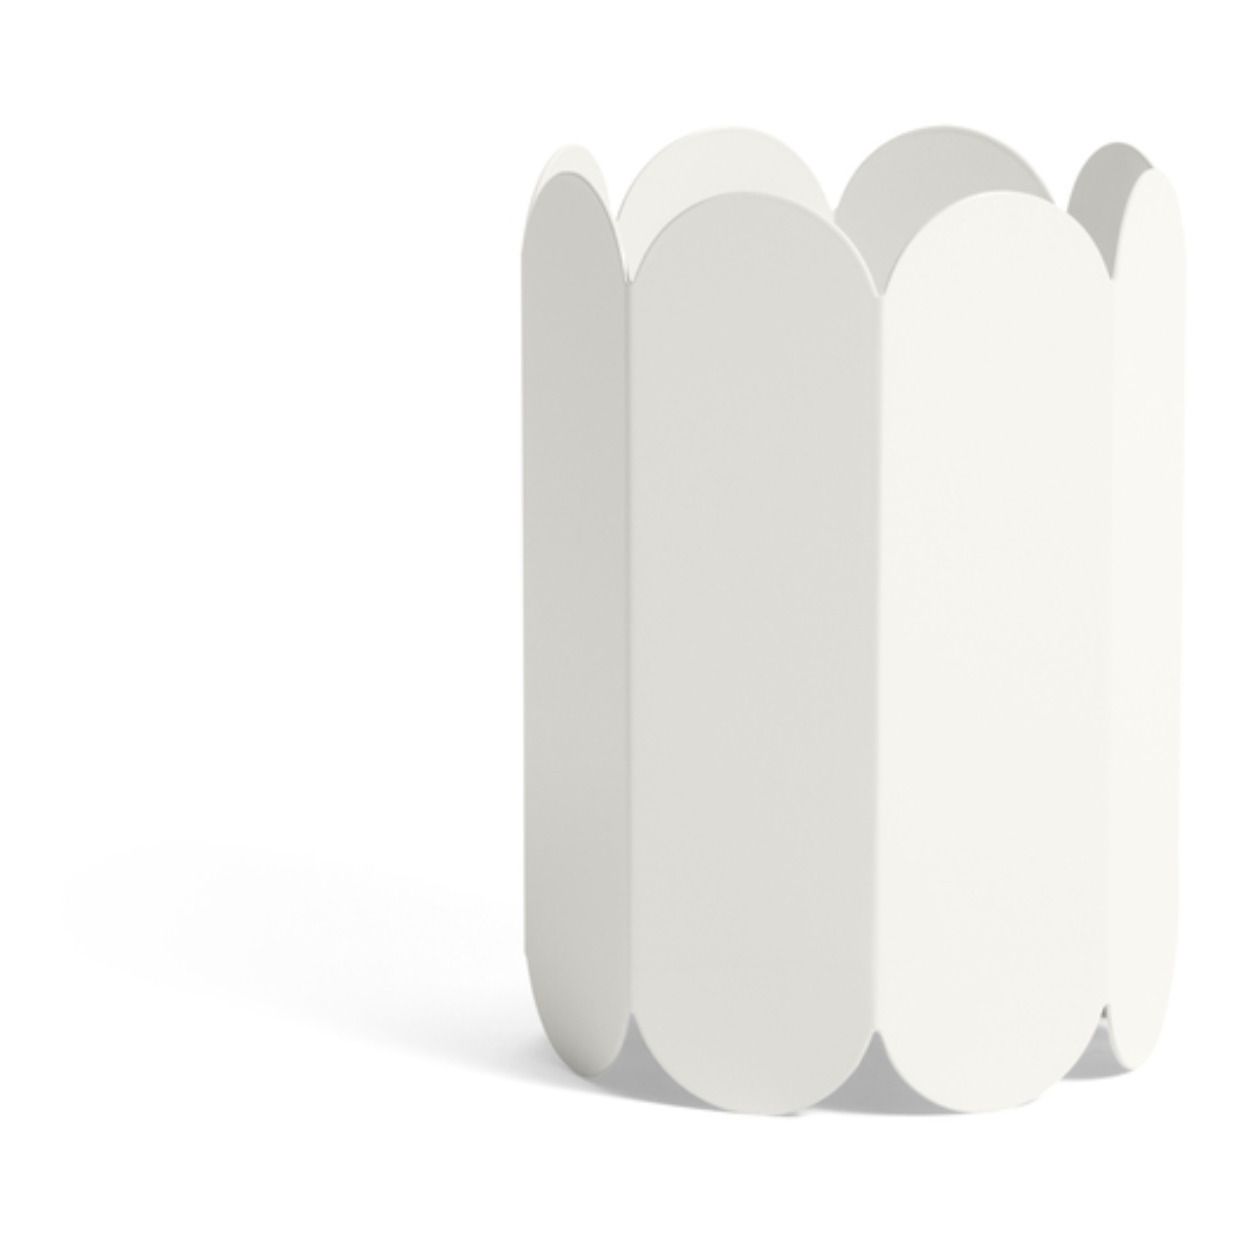 Hay - Vase Arcs en acier inoxidable - Blanc